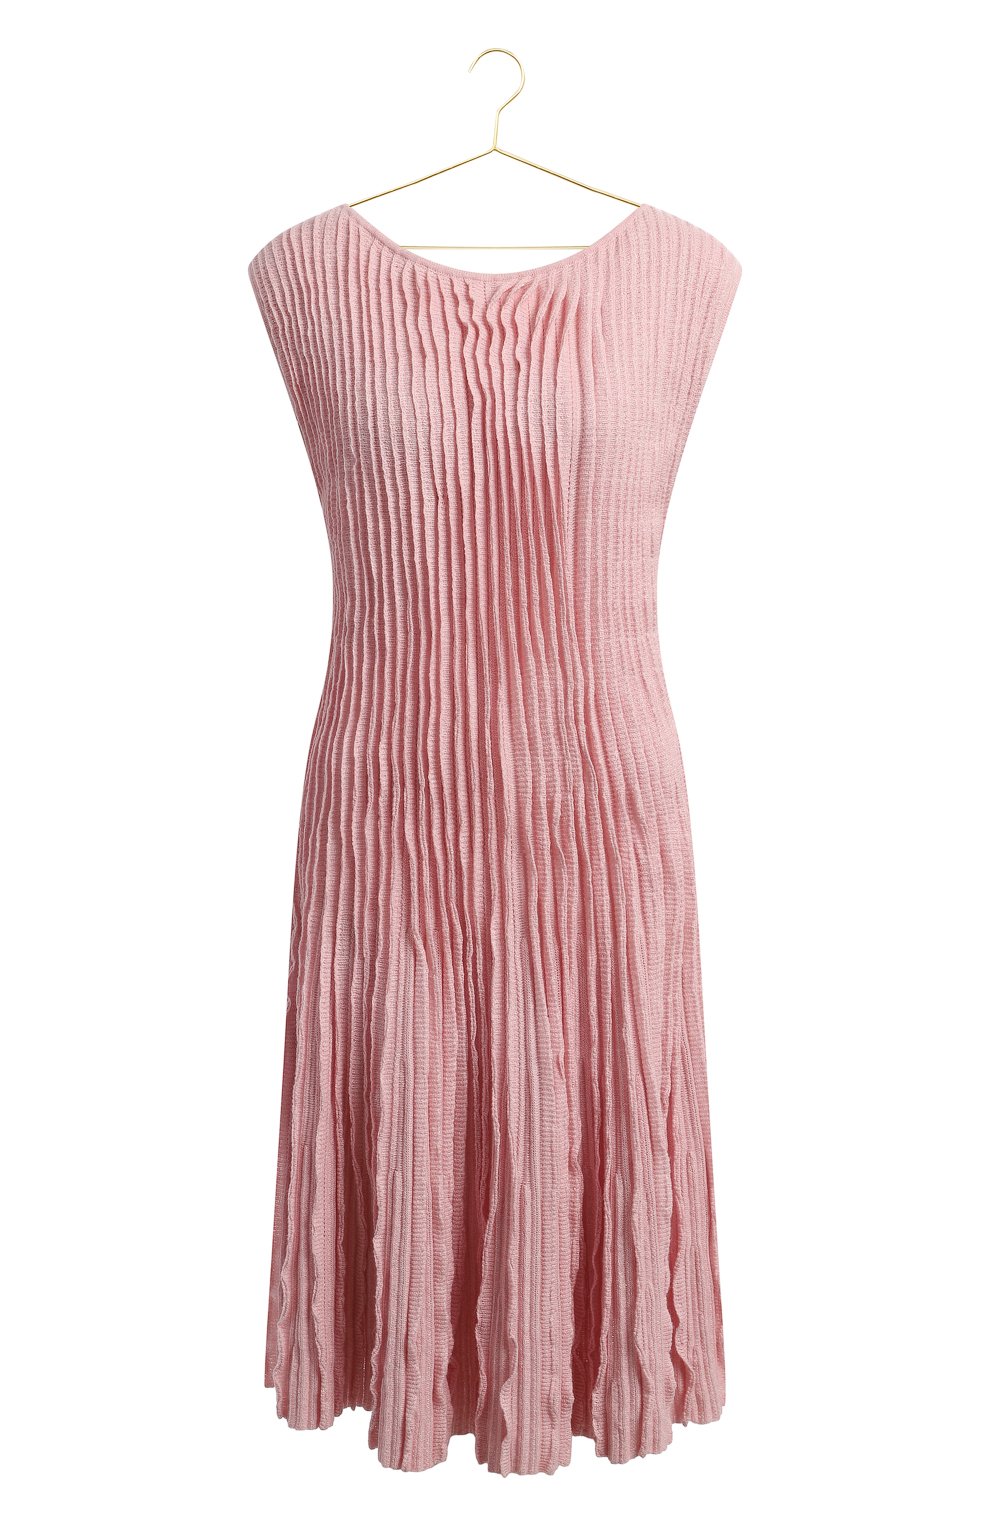 Платье из кашемира и льна | Chanel | Розовый - 1